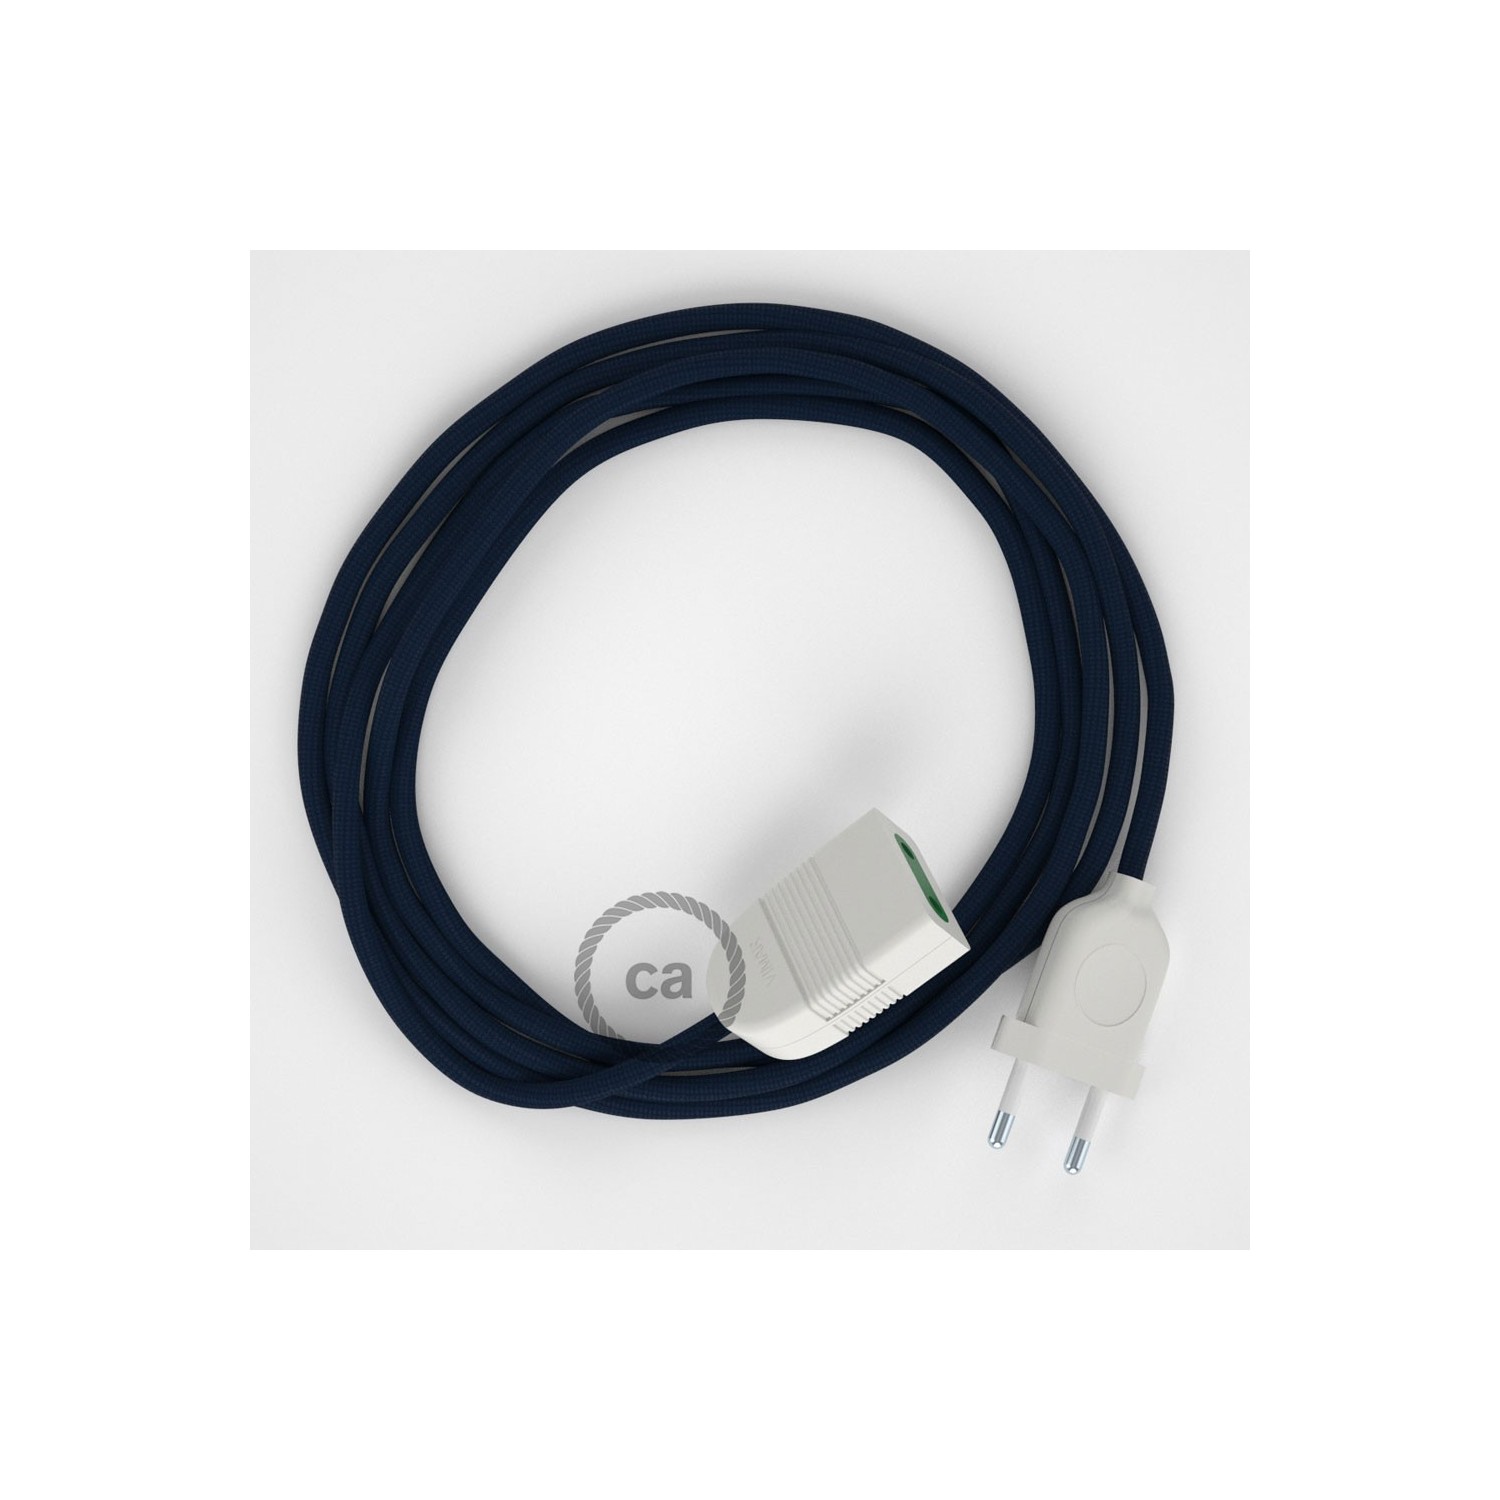 Rallonge électrique avec câble textile RM20 Effet Soie Bleu Foncé 2P 10A Made in Italy.